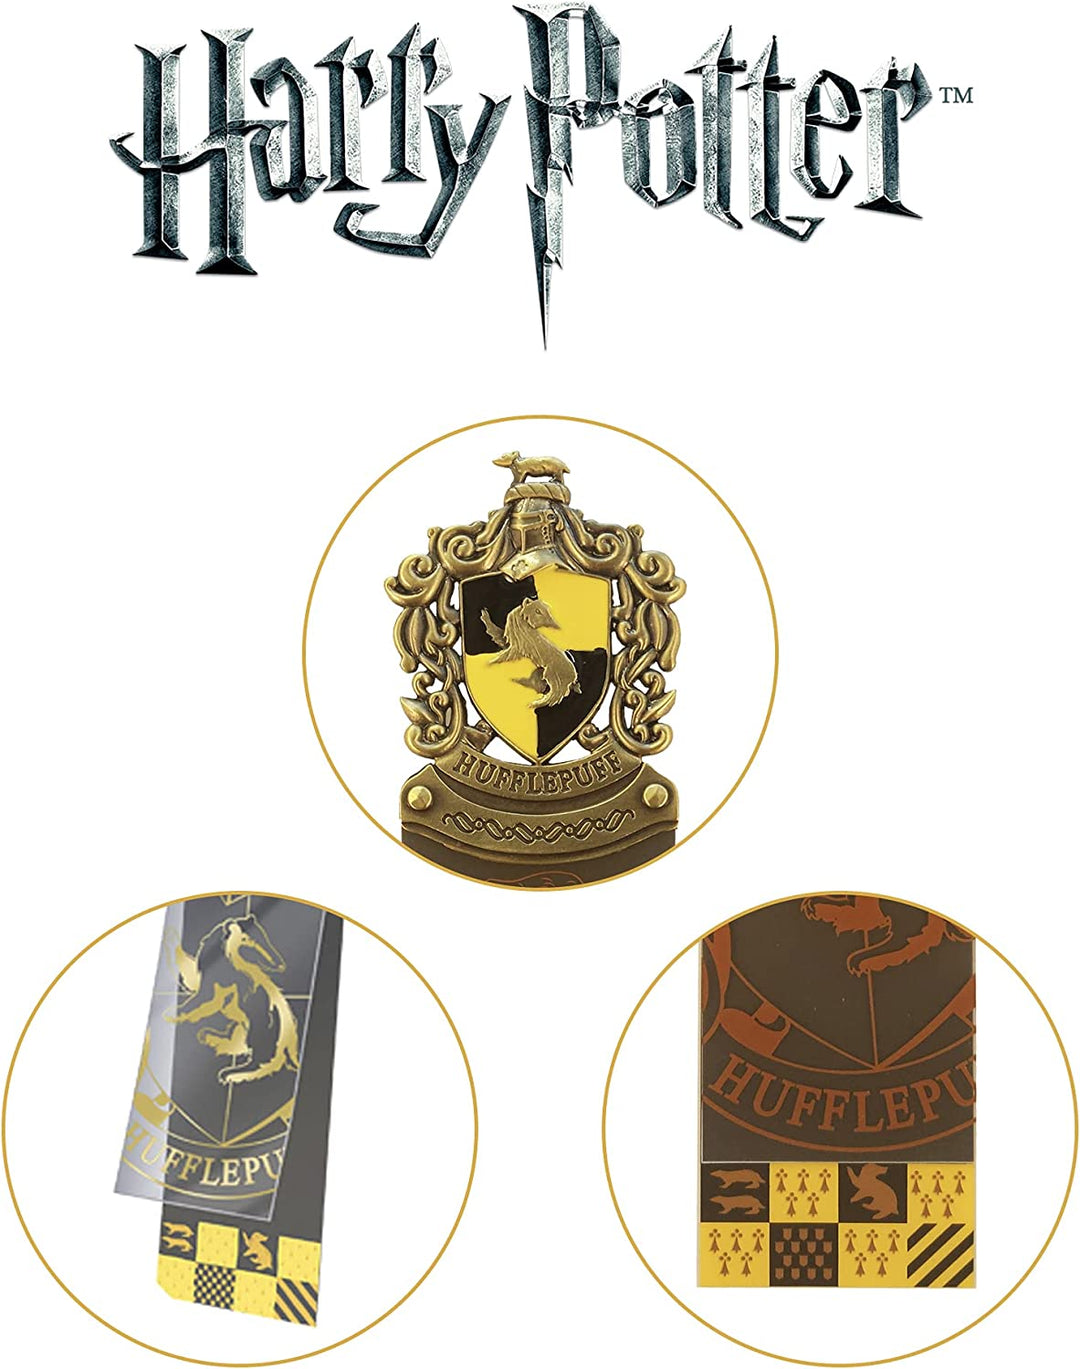 The Noble Collection Lesezeichen mit Hufflepuff-Wappen, Harry-Potter-Lesezeichen mit handemailliertem Wappen aus Druckgussmetall – offiziell lizenzierte Harry-Potter-Filmgeschenke